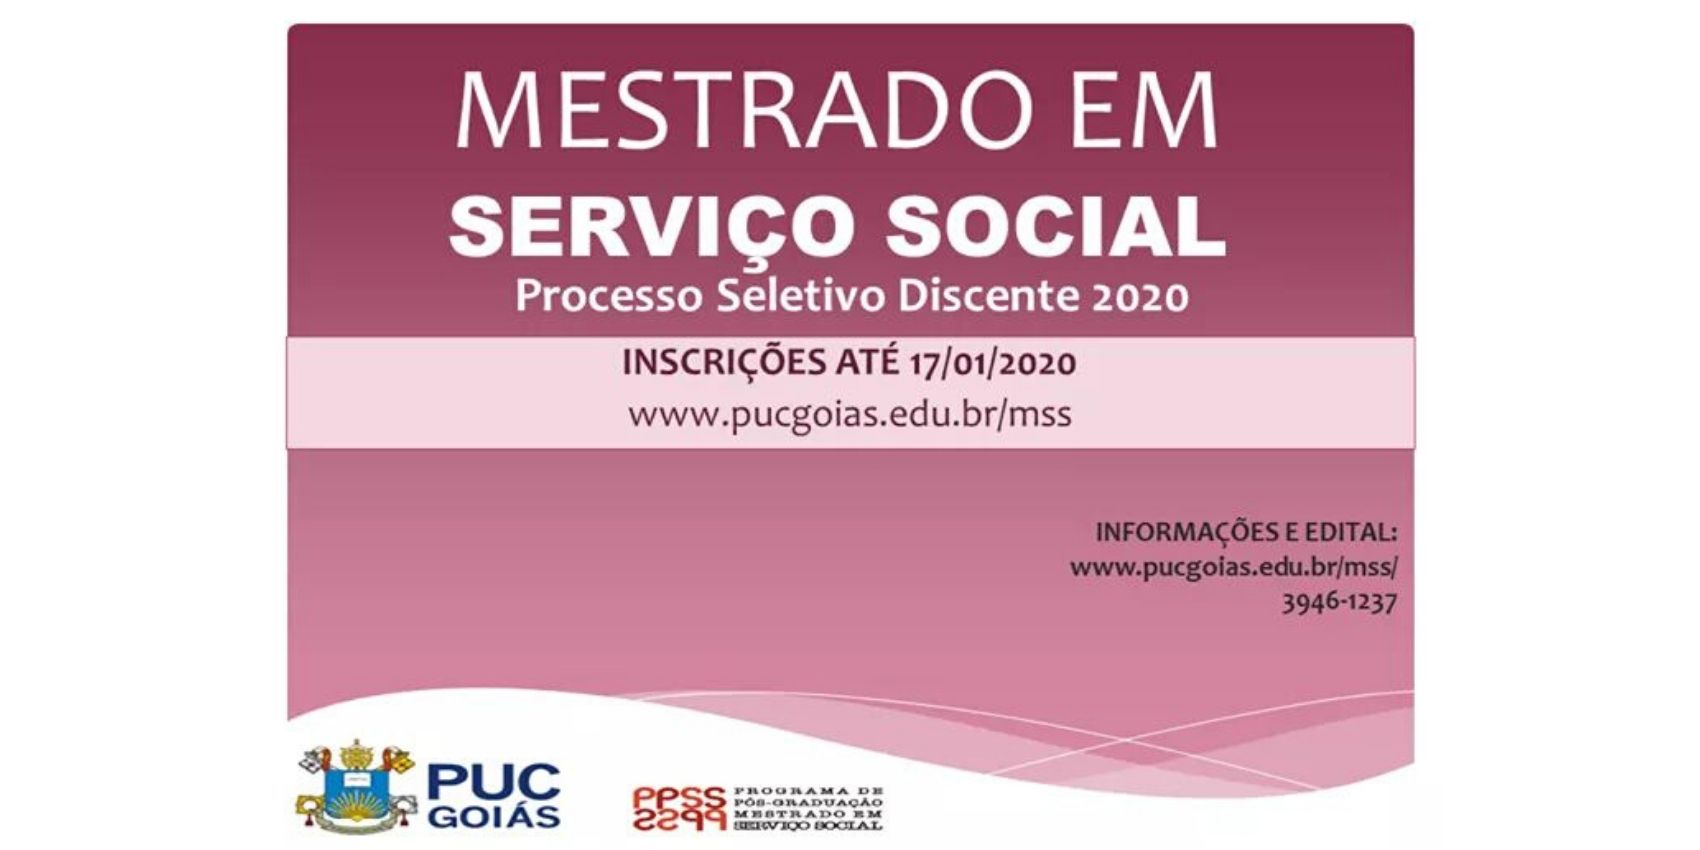 Mestrado em Serviço Social PUC Goiás 2020 2